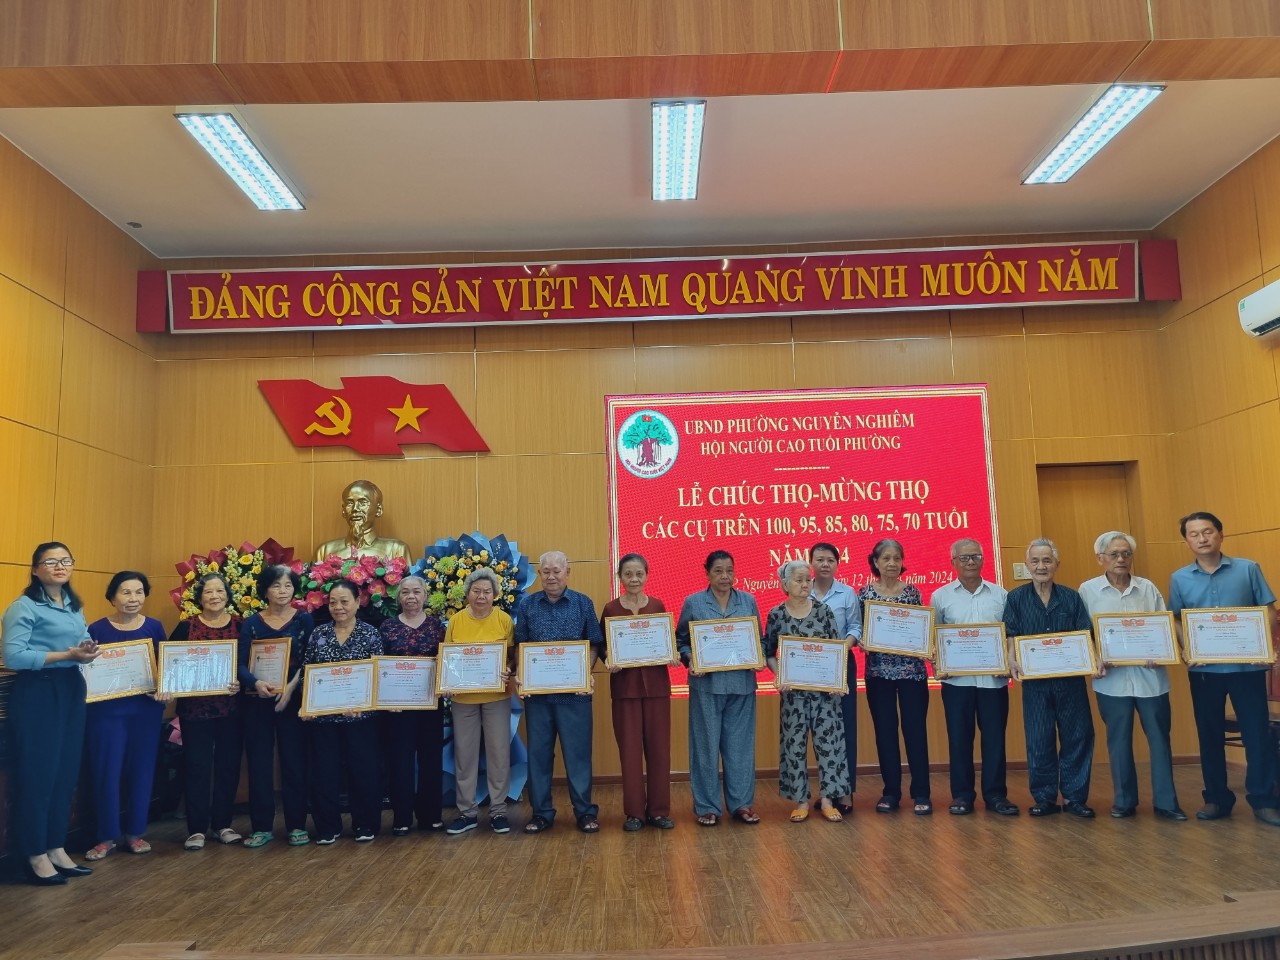 UBND phường Nguyễn Nghiêm, thành phố Quảng Ngãi tổ chức Lễ Chúc Thọ - Mừng Thọ